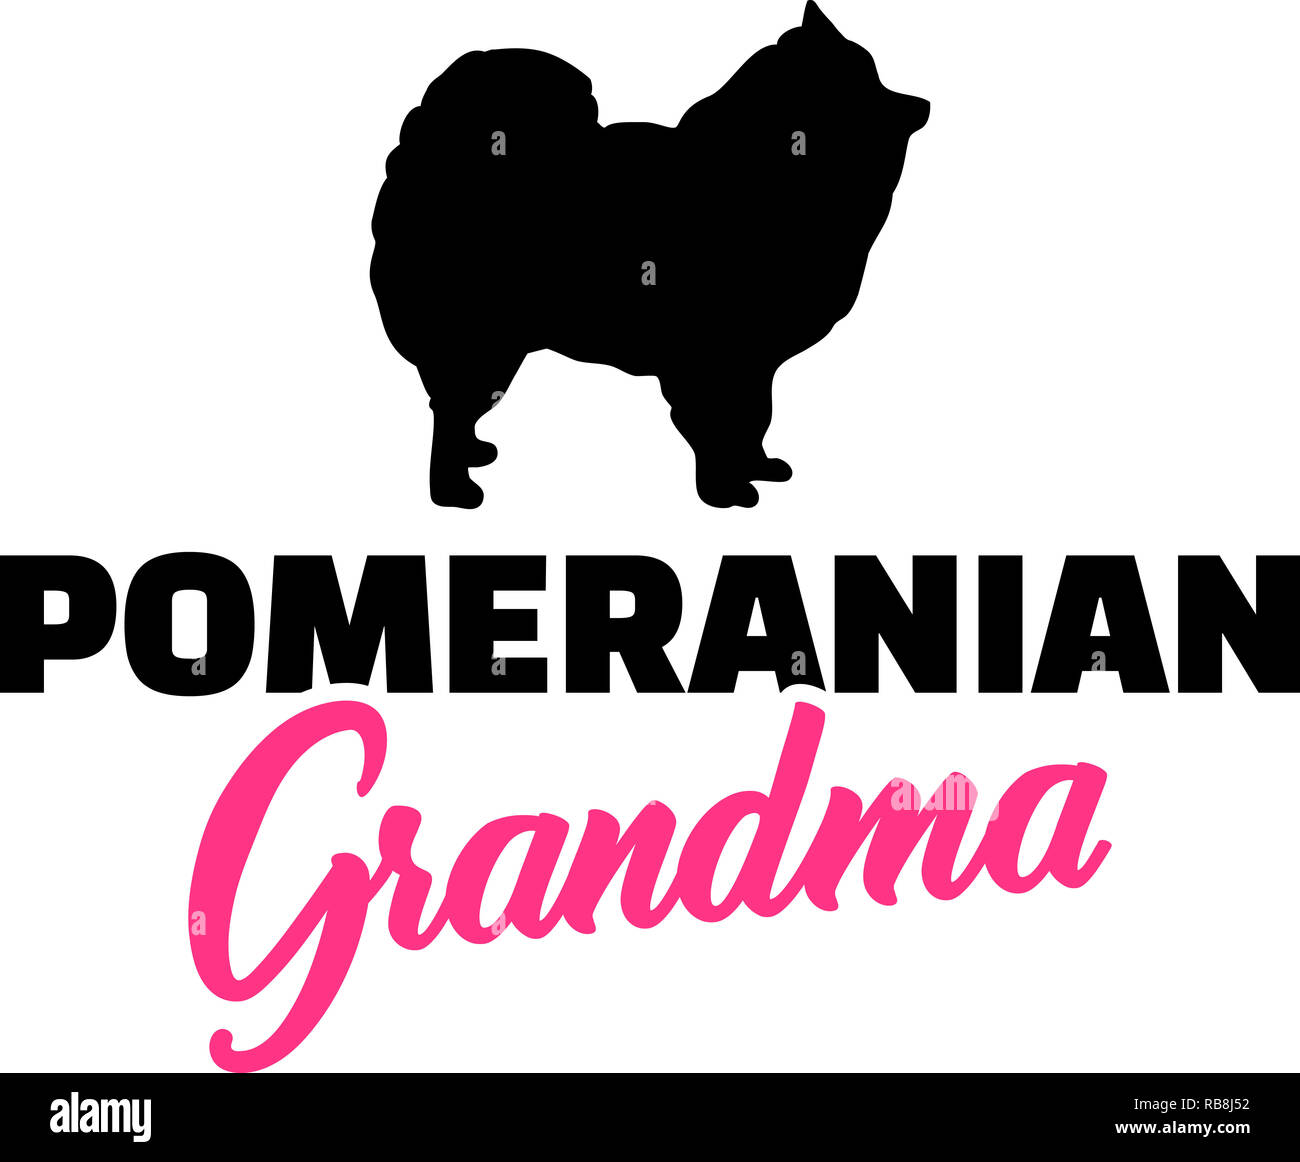 Pomerania silueta abuela Rosa palabra Foto de stock